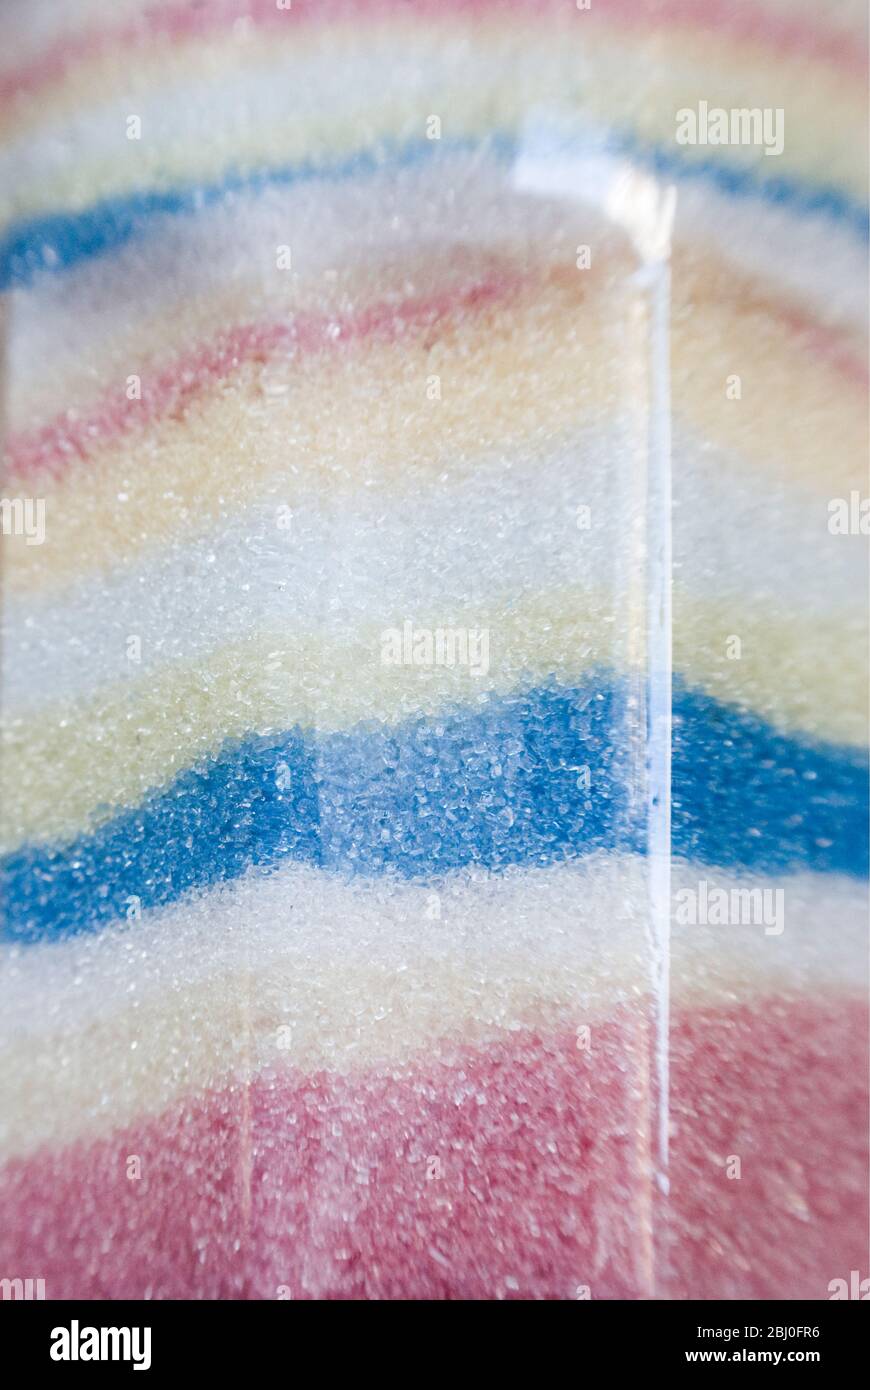 Detalle de jarra de azúcar francesa con cristales de azúcar de color pastel dispuestos en capas separadas - Foto de stock